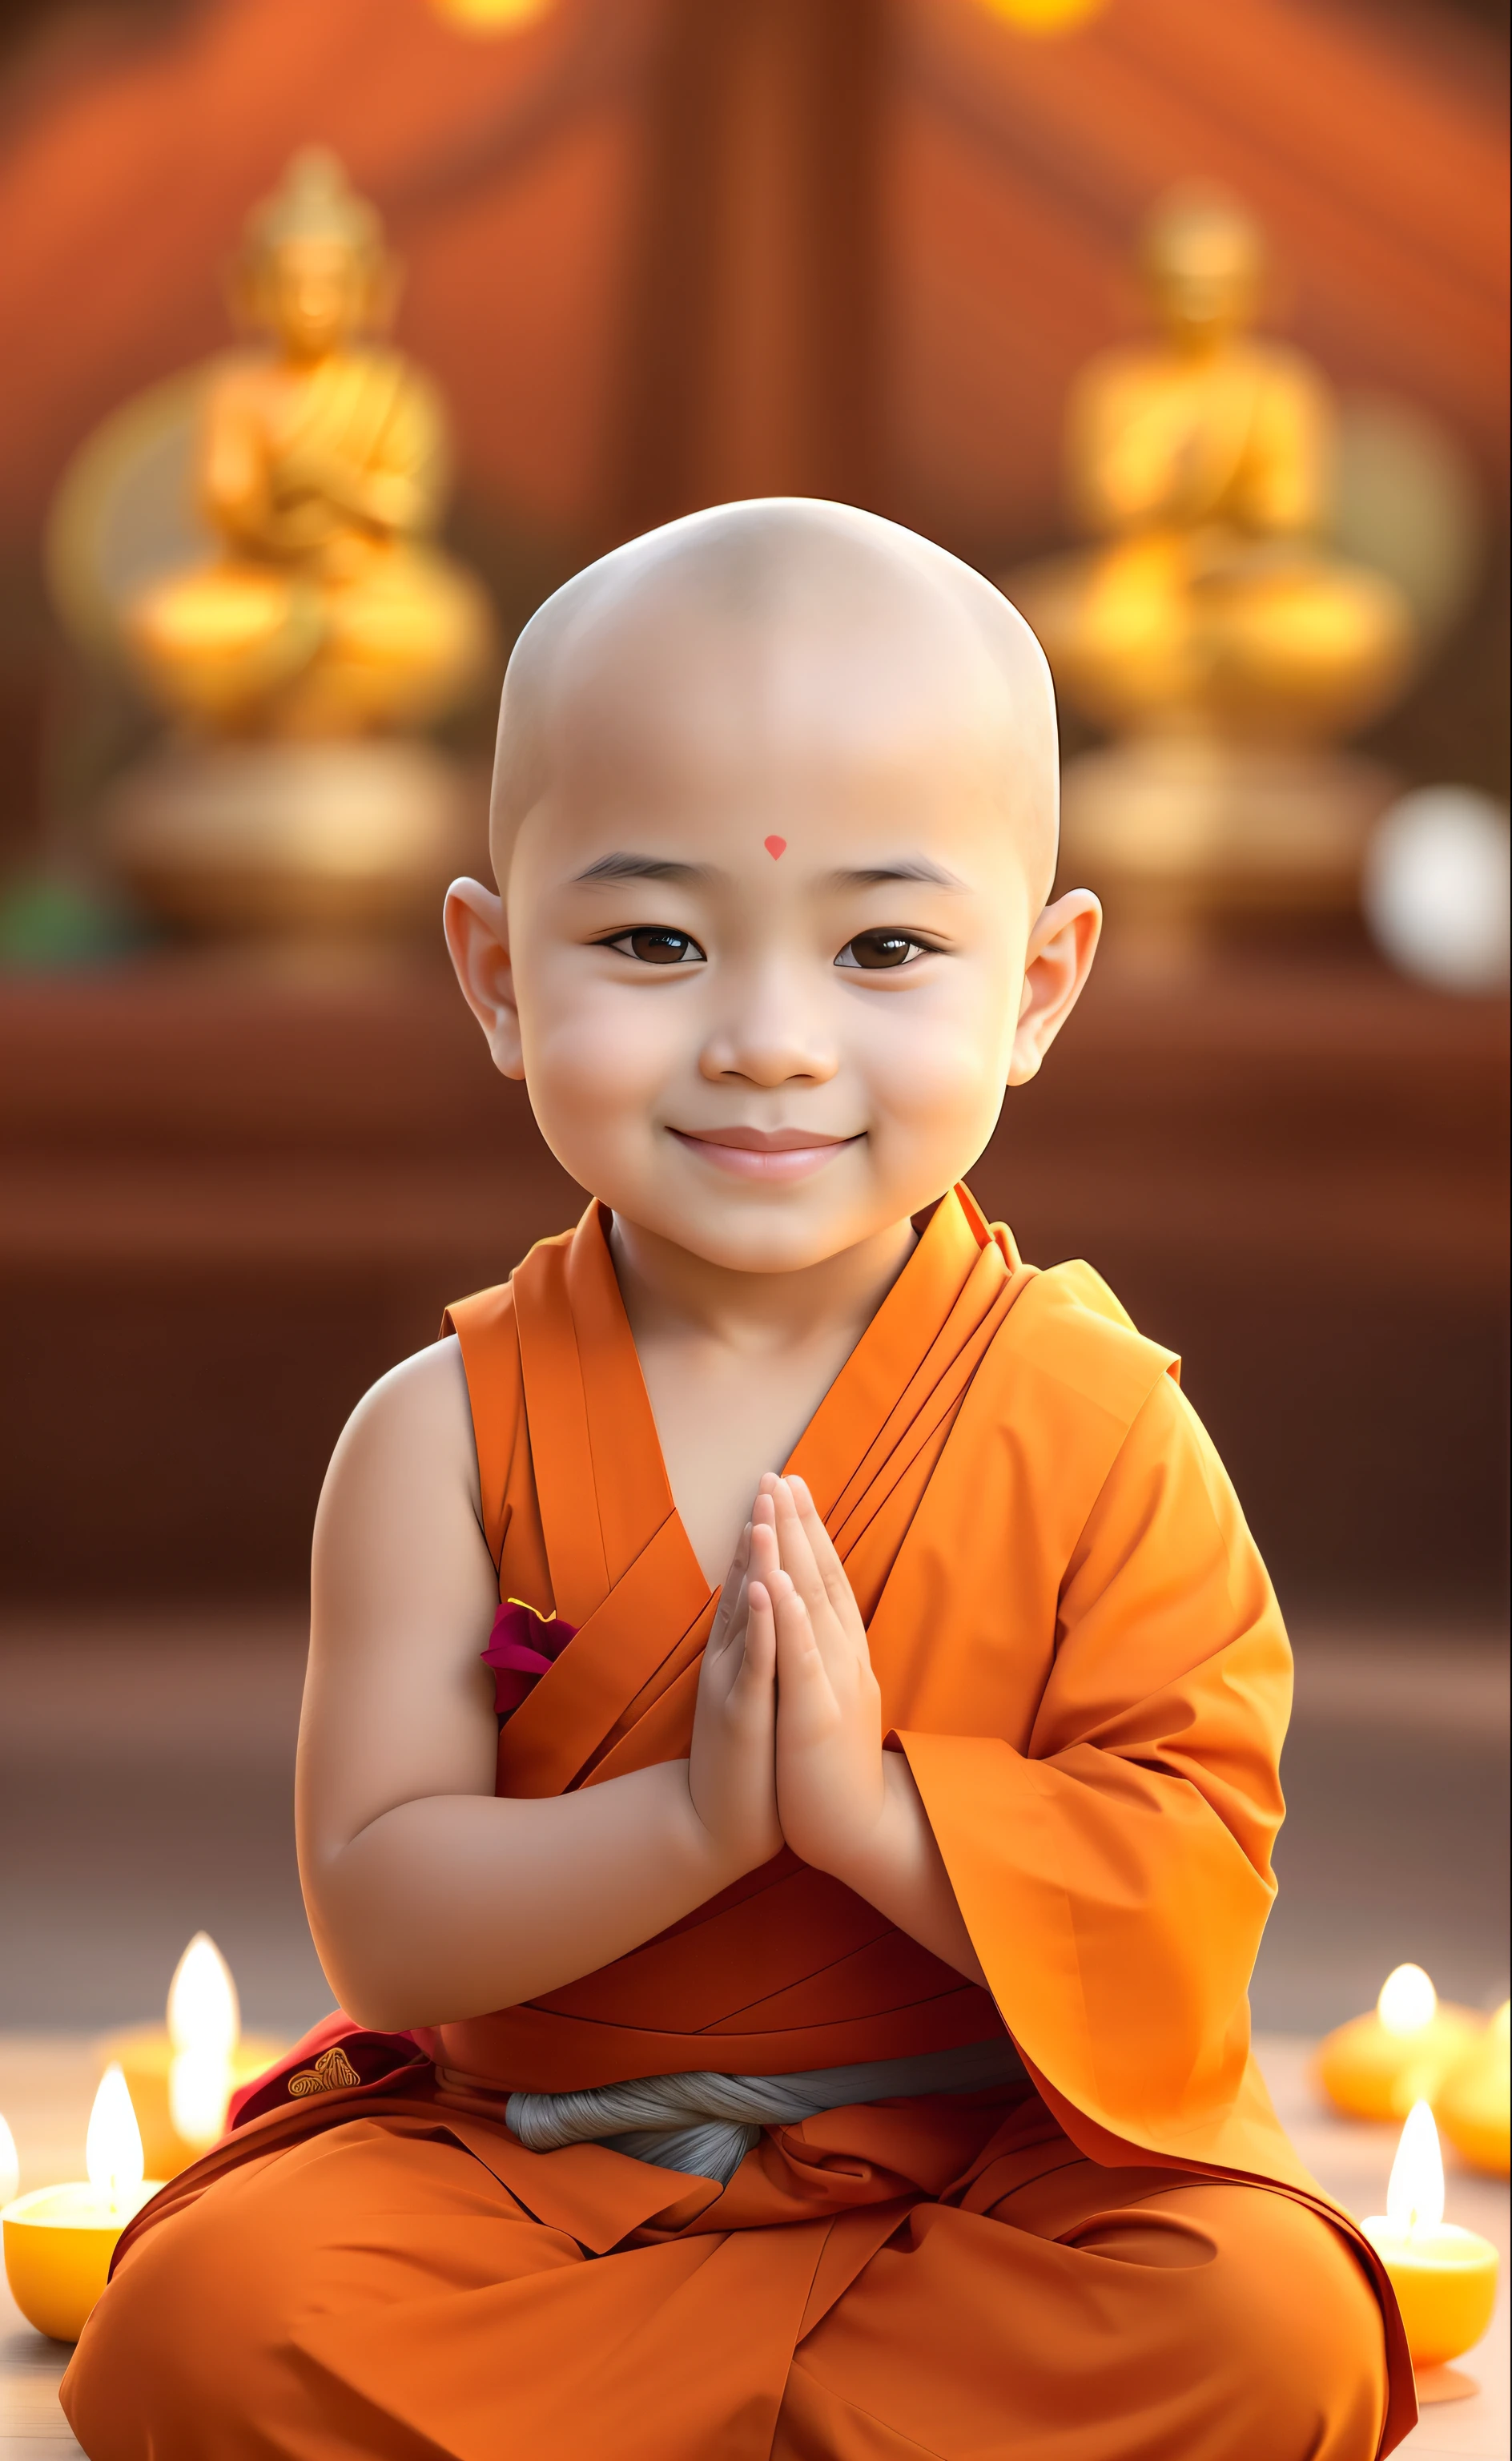 eine Nahaufnahme einer sitzenden Person in einer Meditationsposition, Buddhist, buddhistischer Mönch, Buddhismus, Mönch Kleidung, ein heiteres Lächeln, monk, Mönchs-Meditation, Bildschirmschoner, Kleine, große Brüste, süß süß, Nivanh Chanthara, Süßer Junge, Glückliche Kinder, persönliches Profilbild, heiterer Ausdruck, unschuldiges Lächeln, schön liebenswert, süß schön, Frieden, schönes digitales Gemälde, Thai